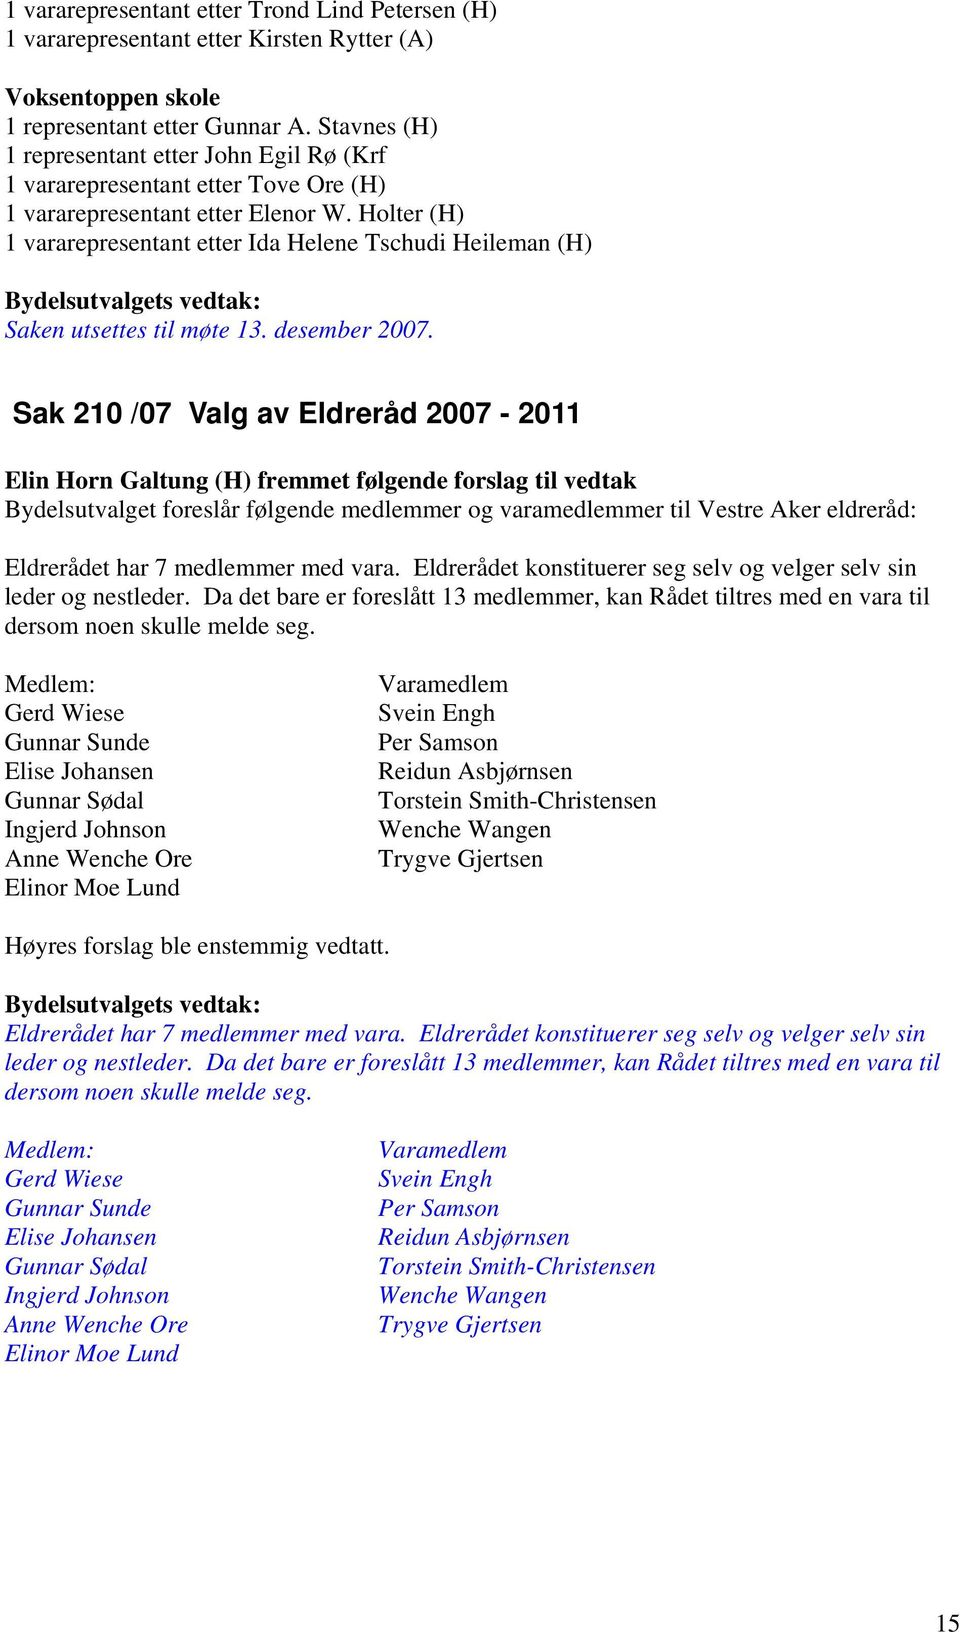 Holter (H) 1 vararepresentant etter Ida Helene Tschudi Heileman (H) : Saken utsettes til møte 13. desember 2007.